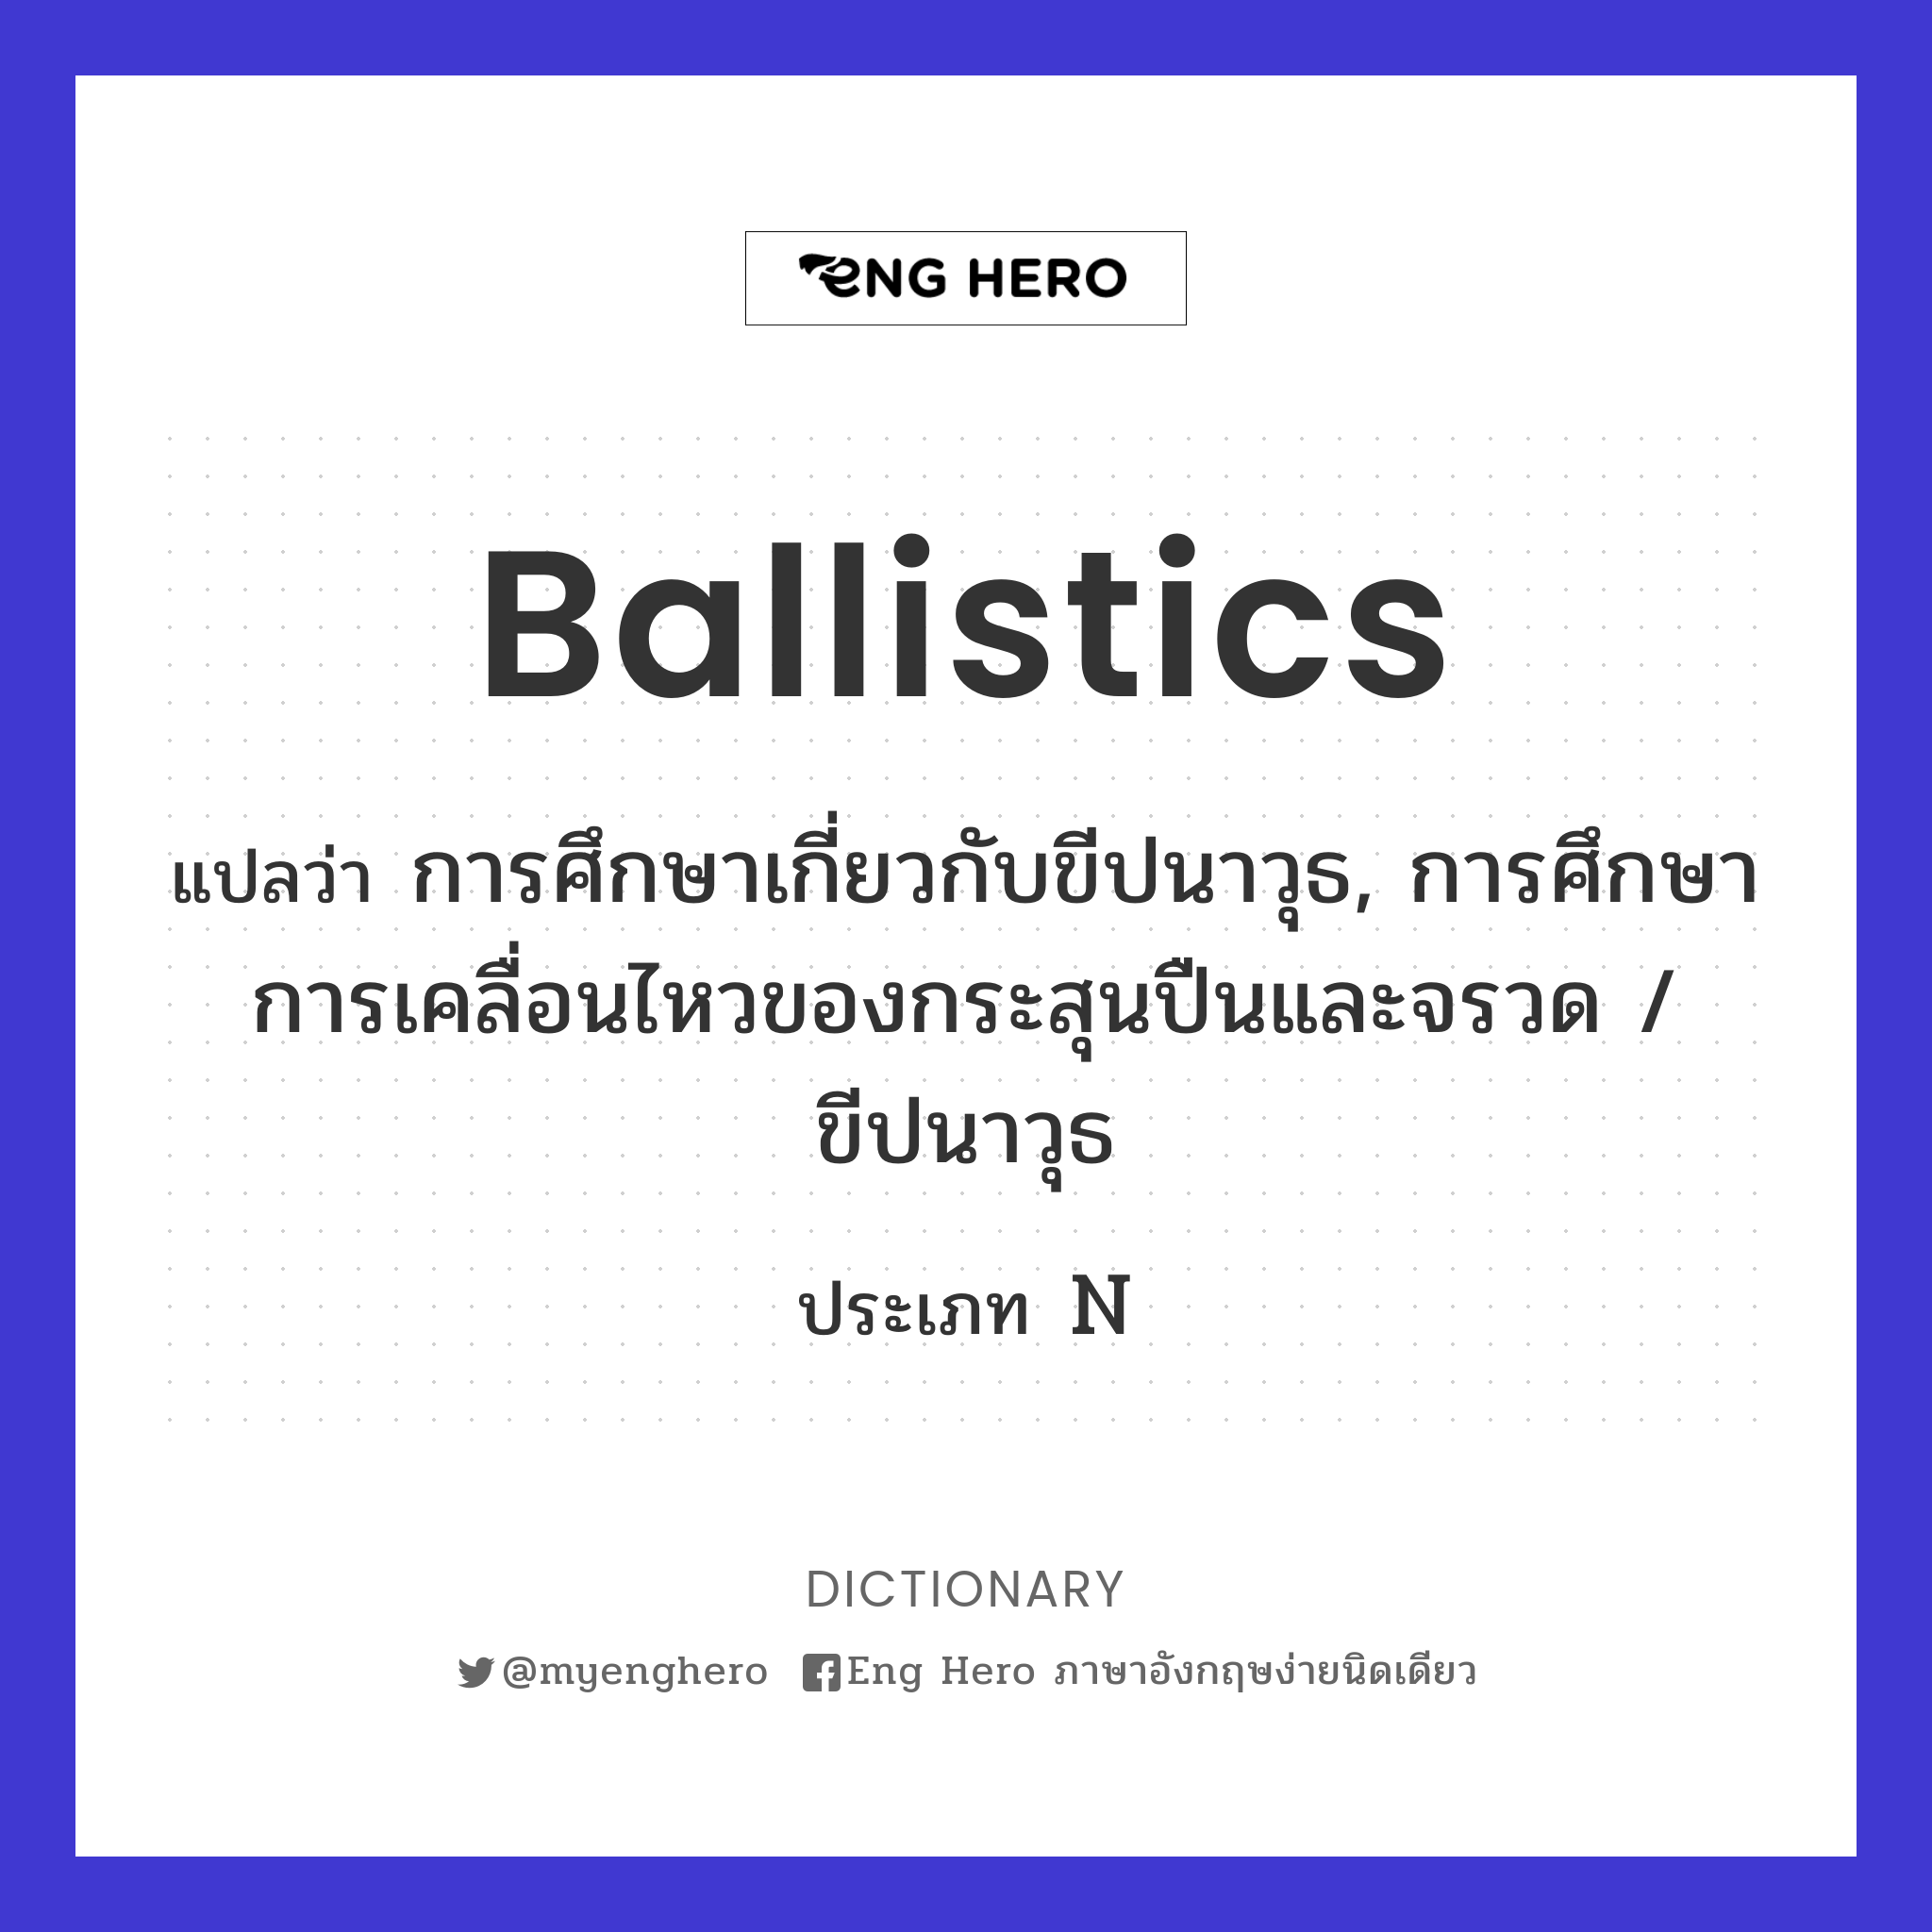 ballistics